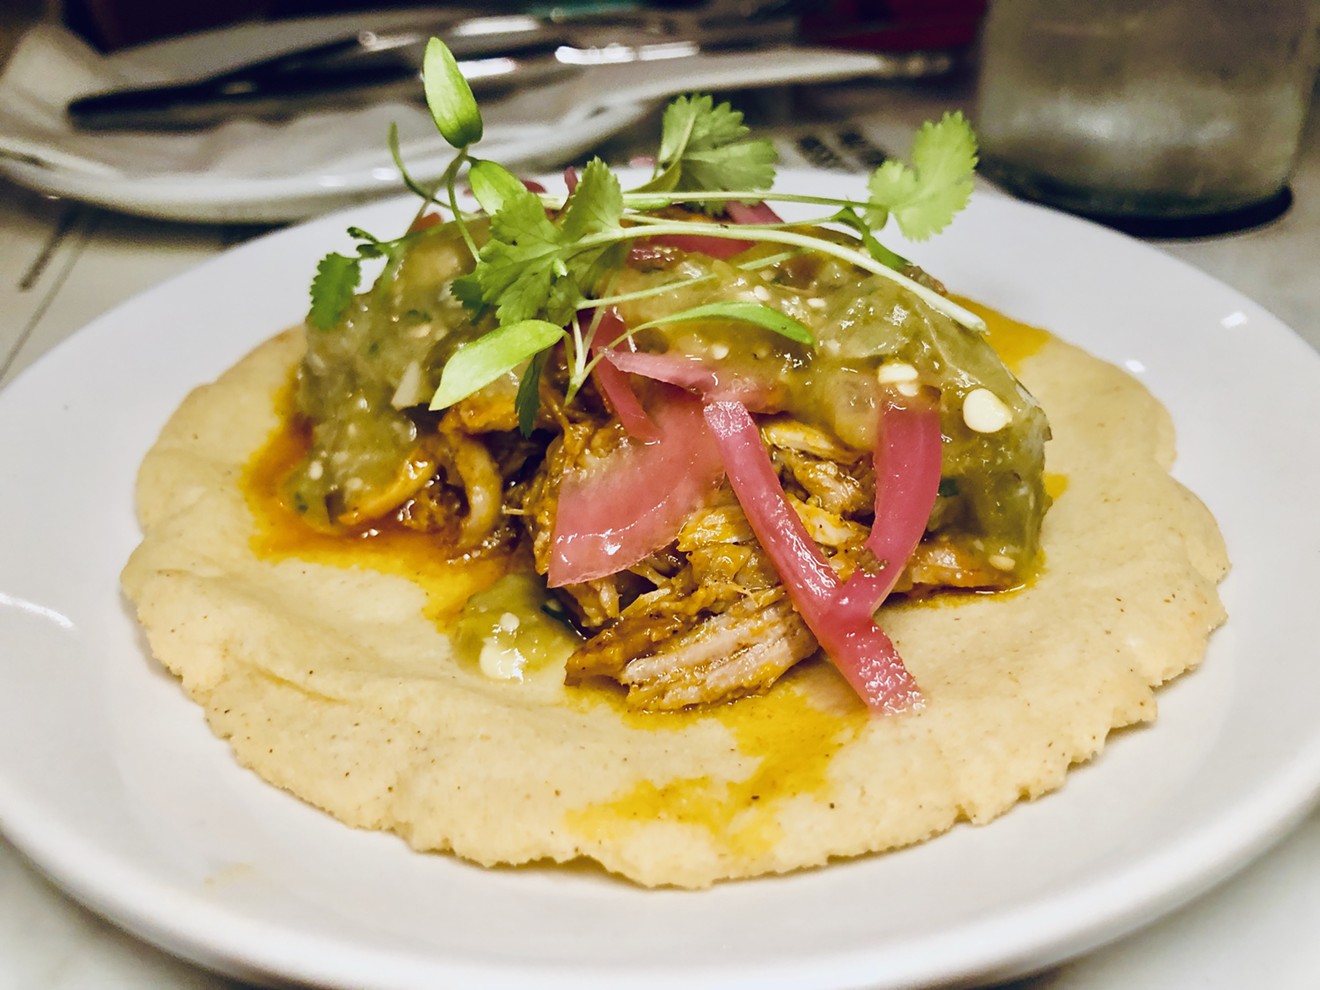 The cochinita pibil taco is the signature taco at Cochinita & Co.